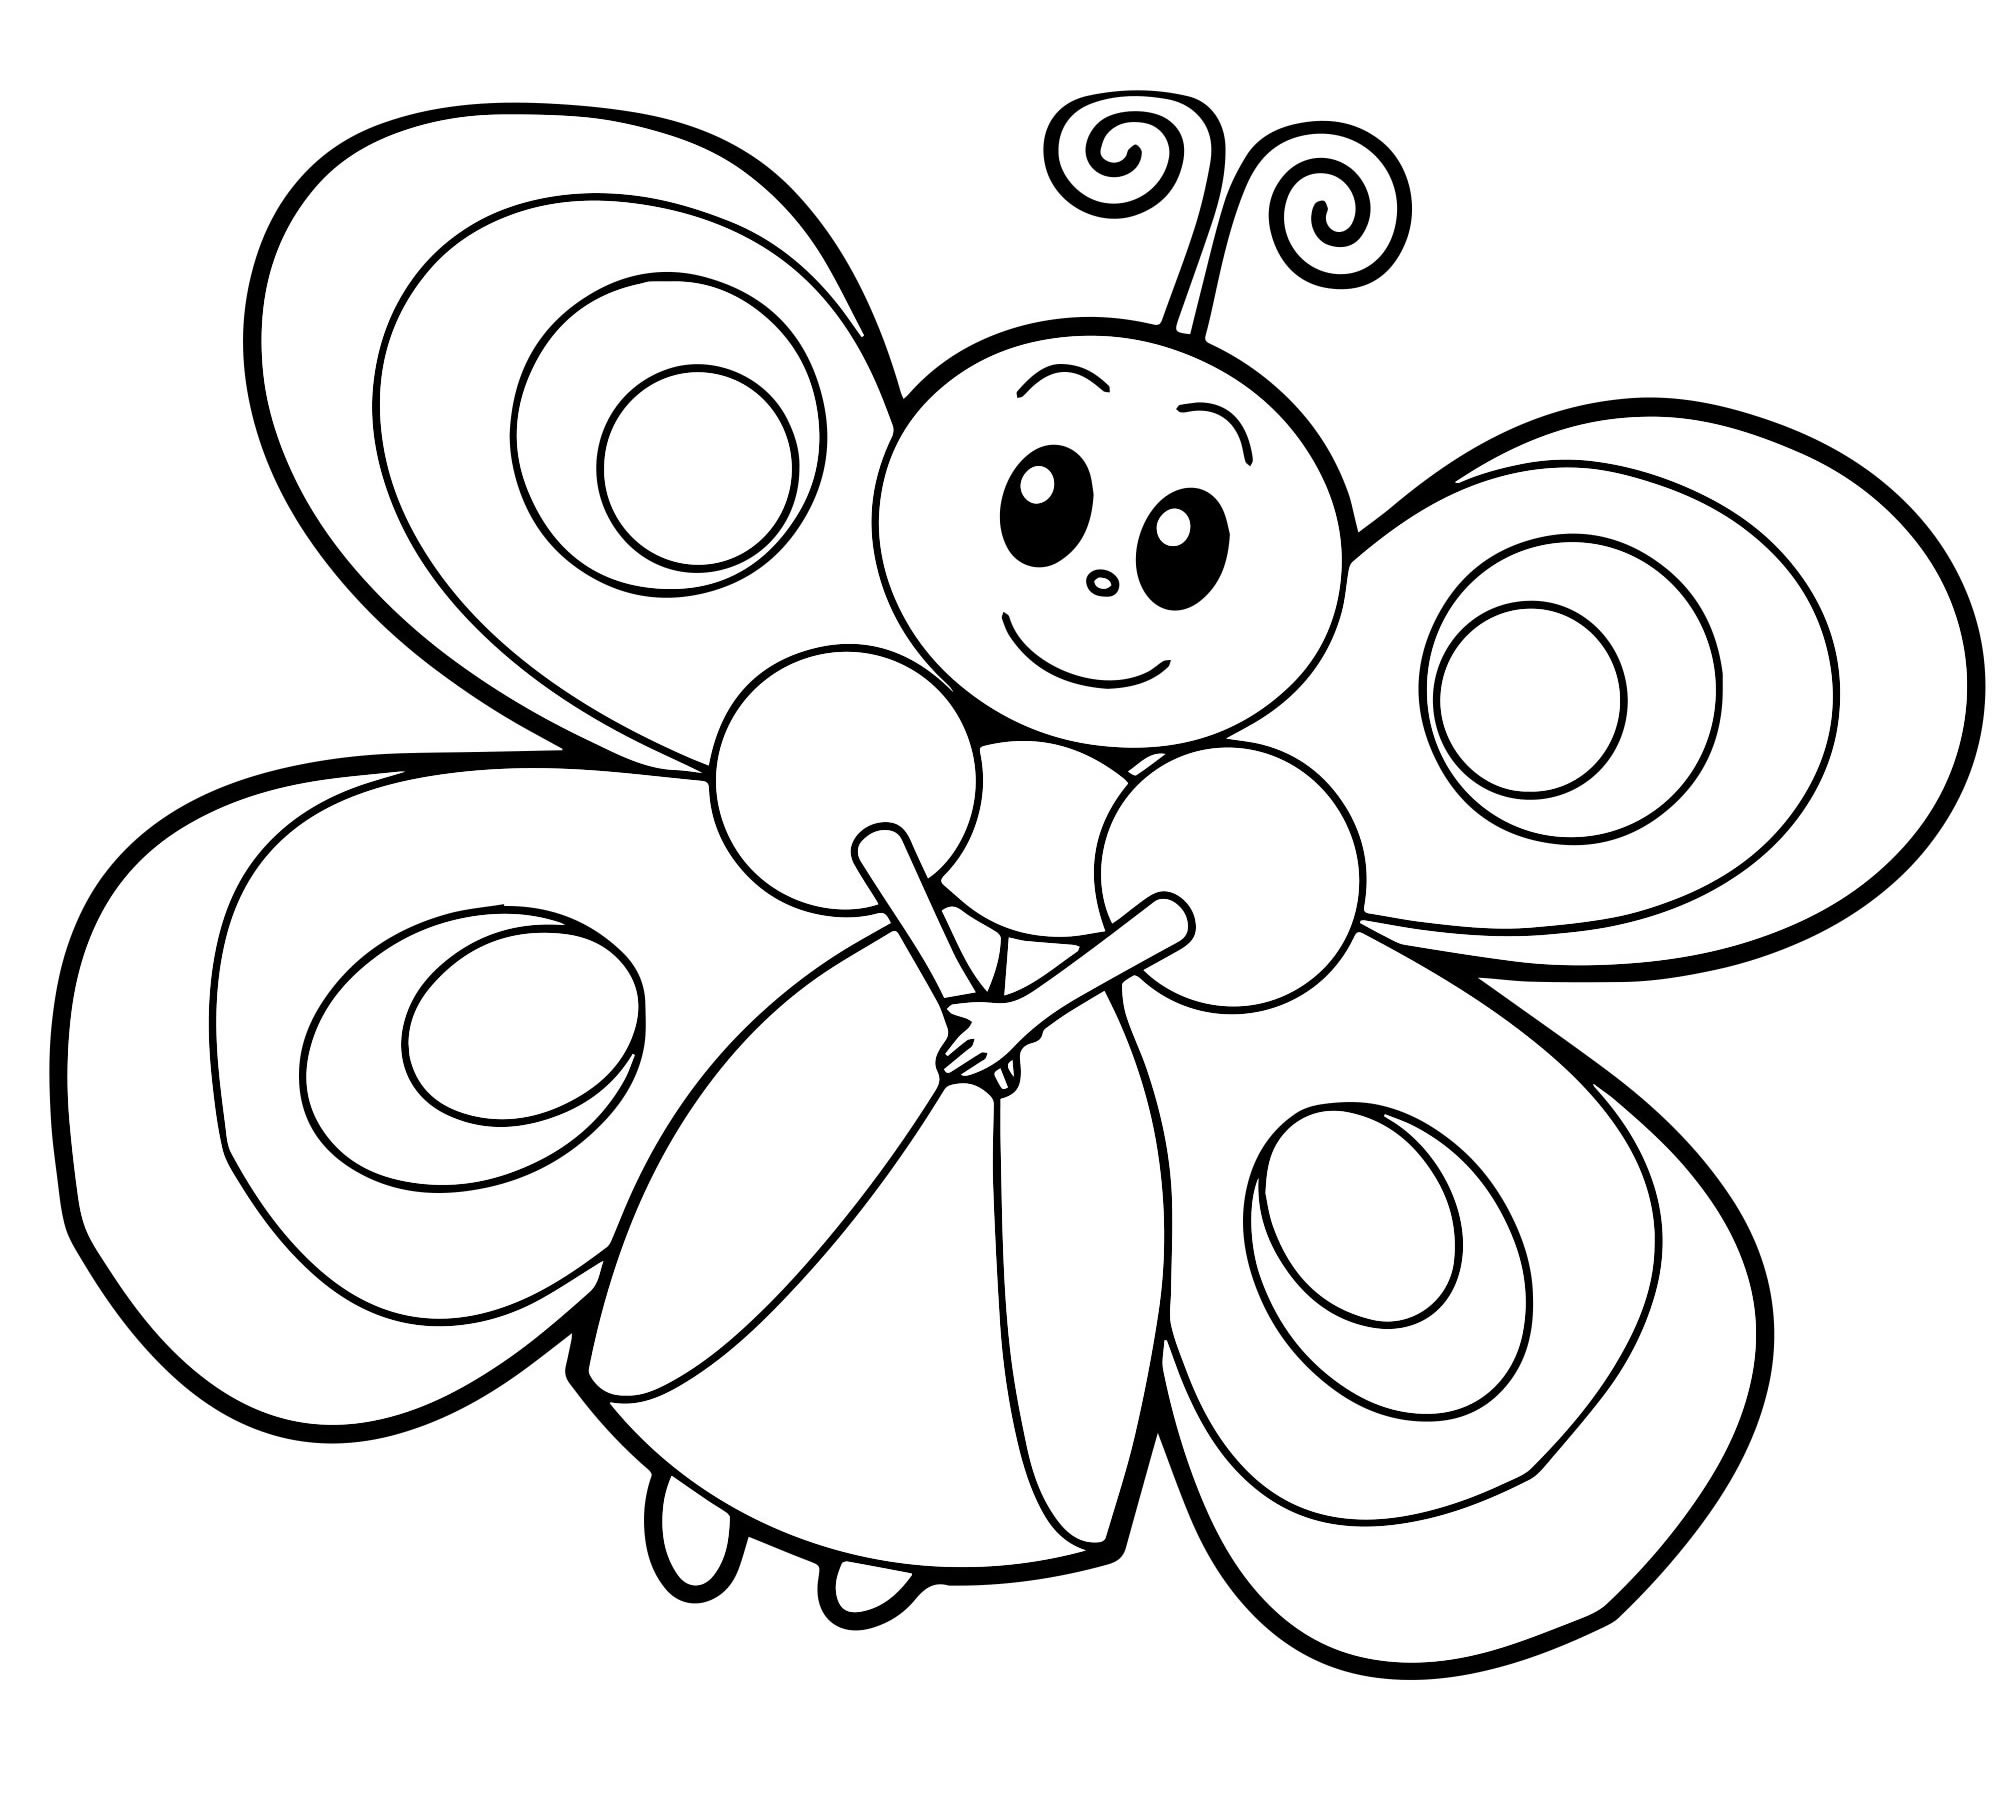 Раскраски для детей 4 5 бабочки. Бабочка раскраска для детей. Бабочка раскраска для малышей. Раскраска для девочек бабочки. Детские раскраски бабочки.